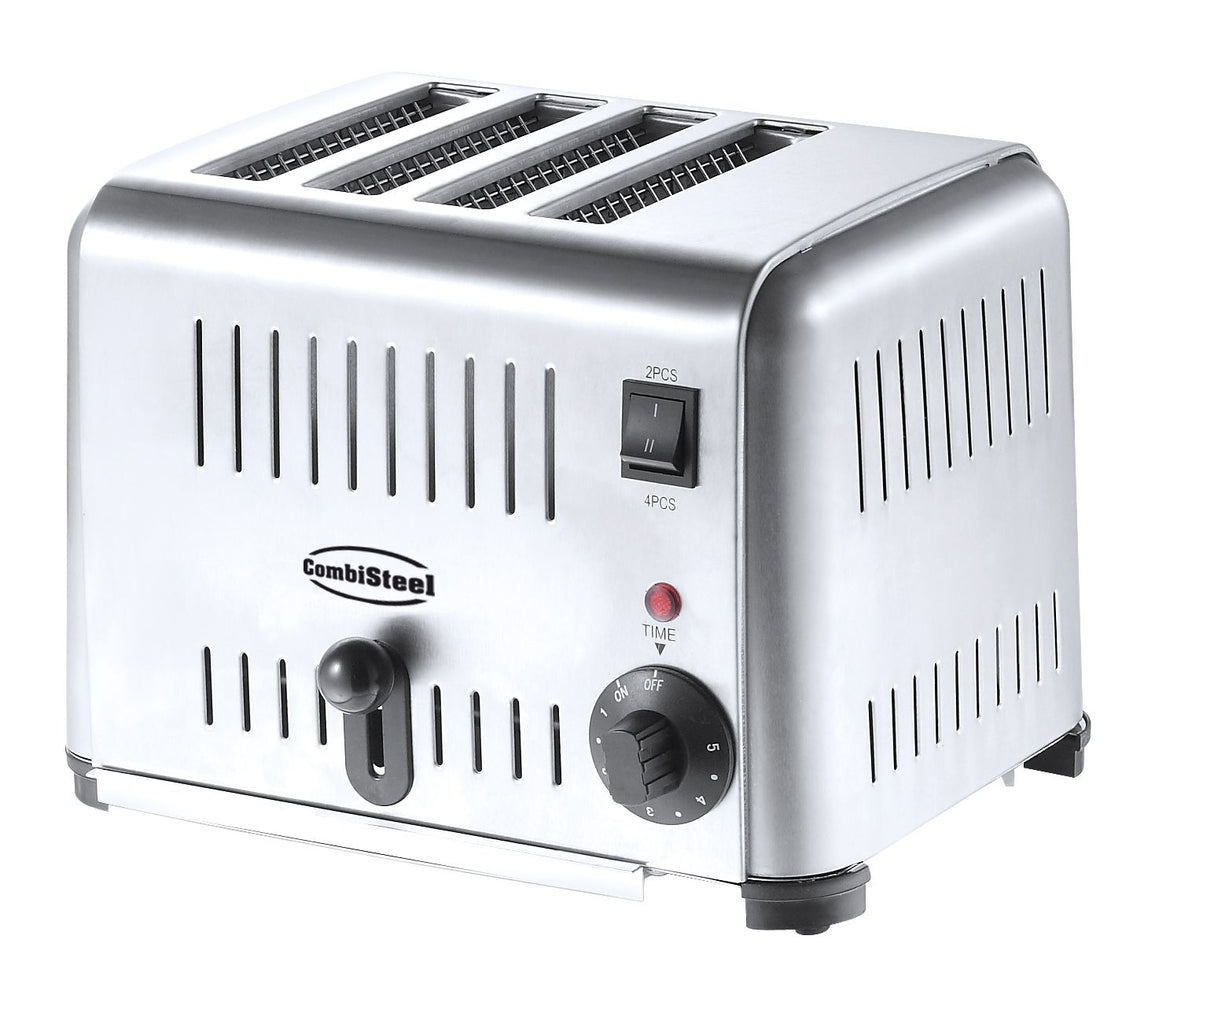 Combisteel Commercial Toaster 4 Slice - 7455.1635 Toasters Combisteel   